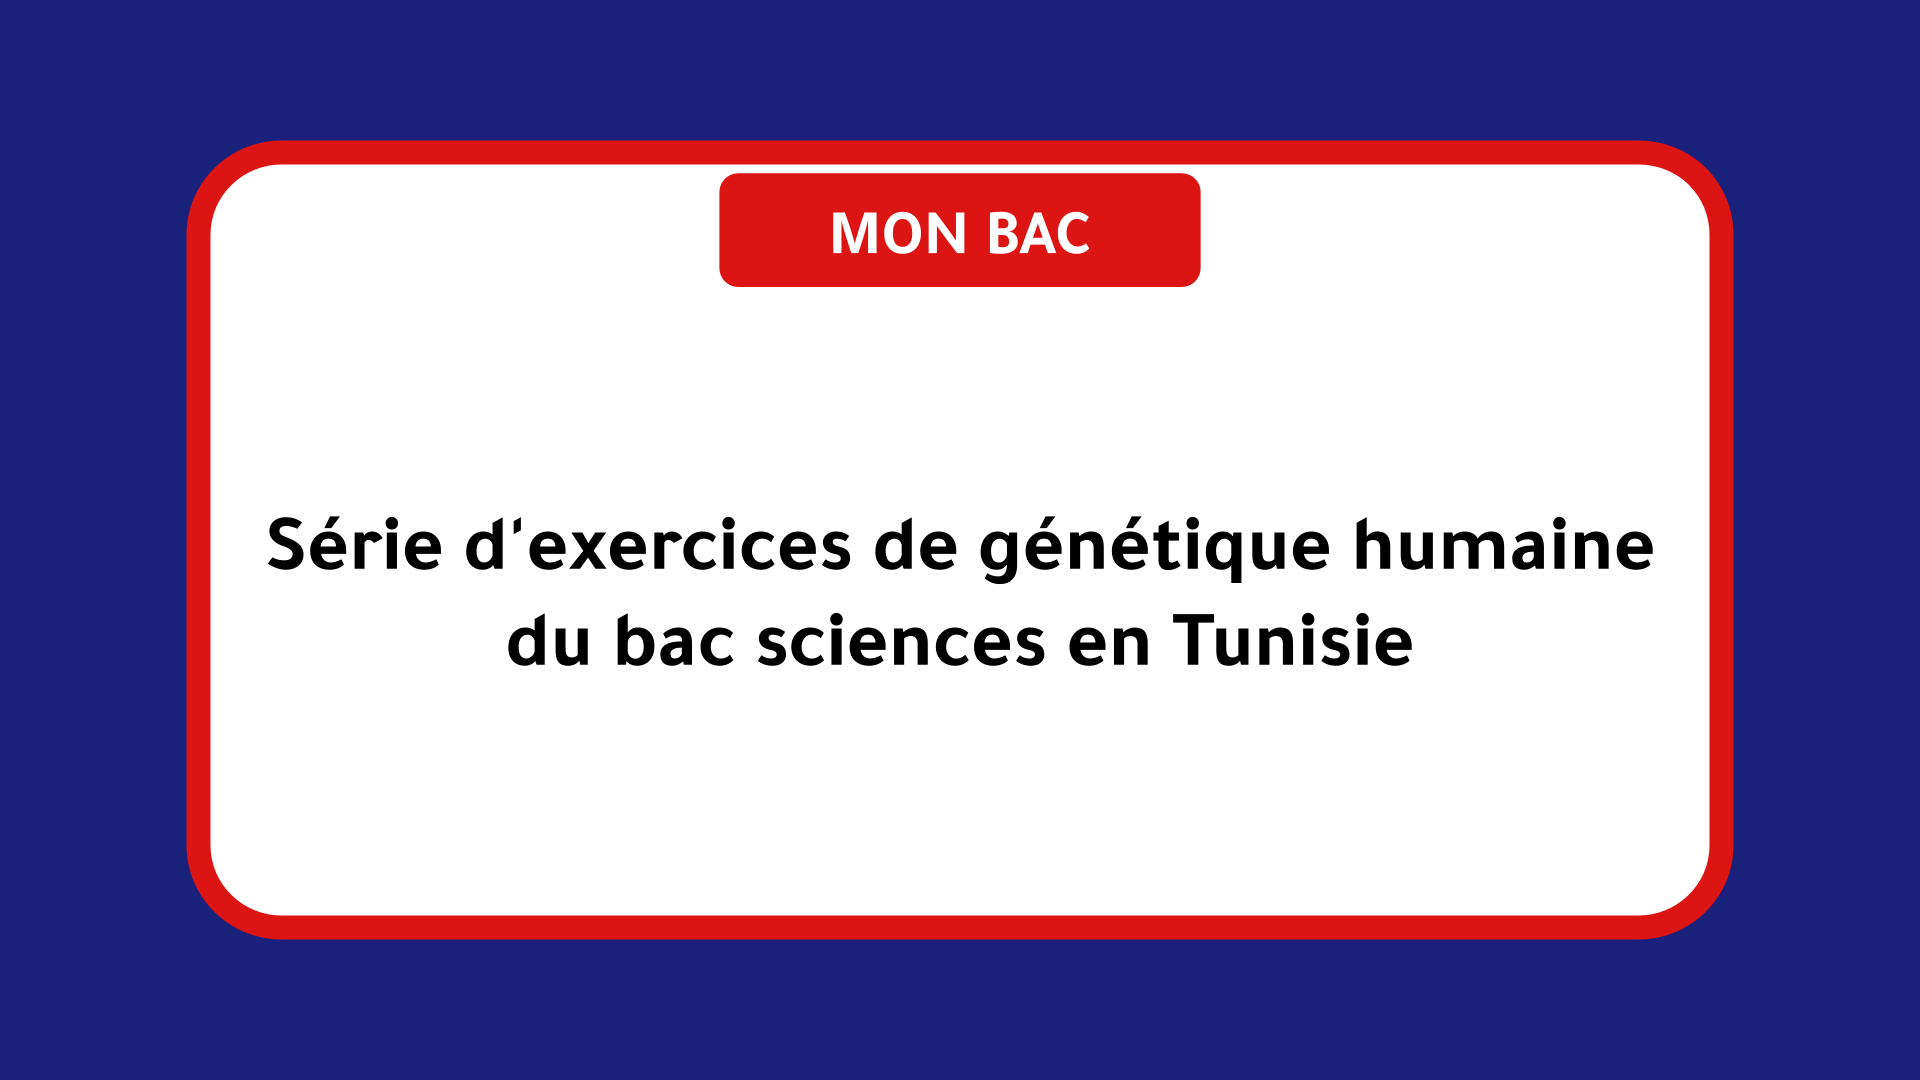 Série d'exercices de génétique humaine bac sciences Tunisie